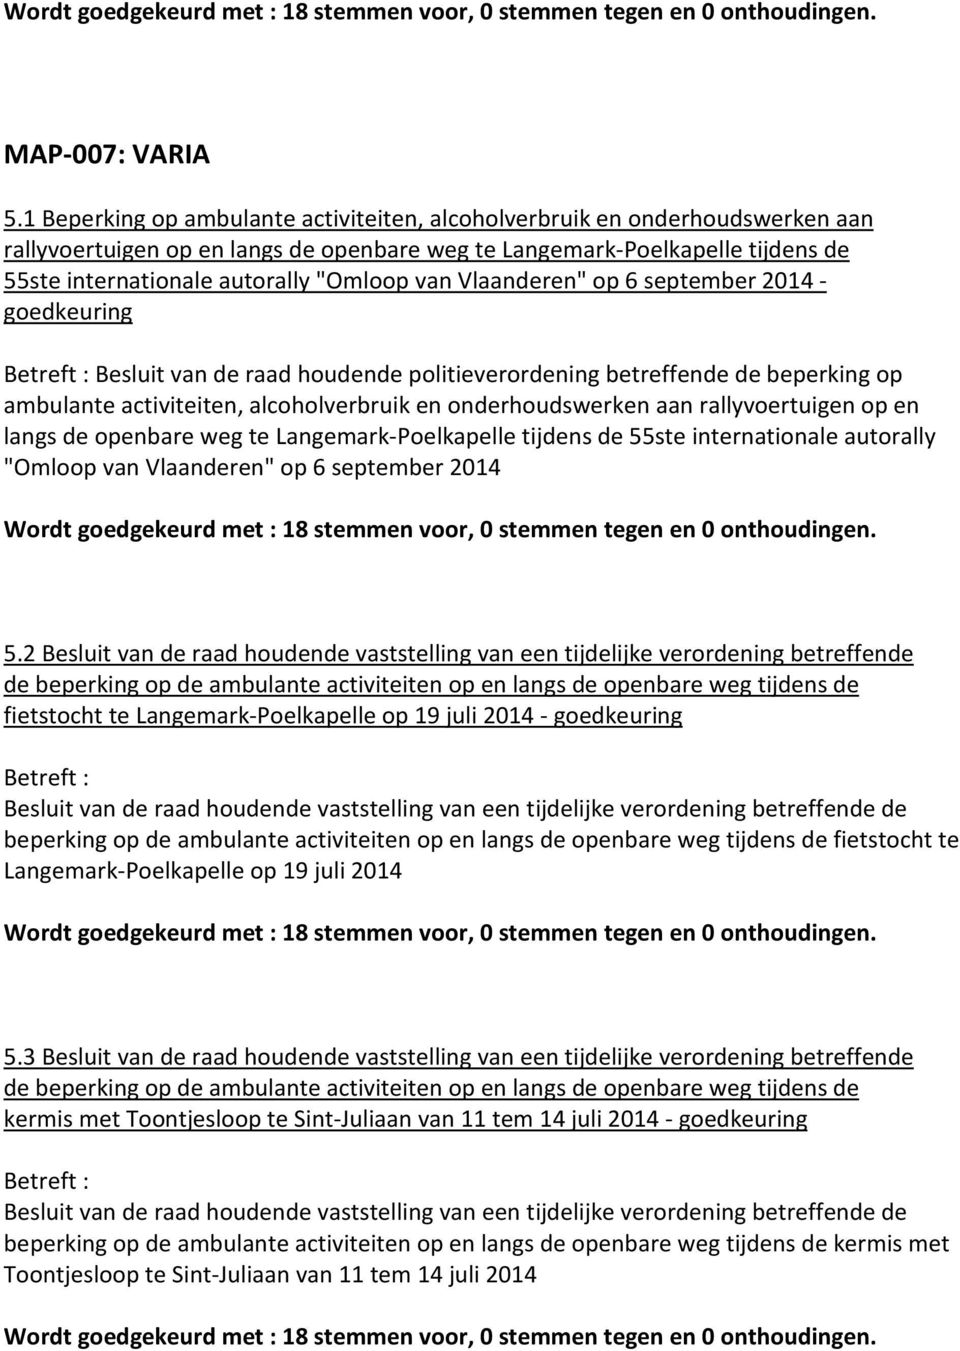 van Vlaanderen" op 6 september 2014 - goedkeuring Betreft : Besluit van de raad houdende politieverordening betreffende de beperking op ambulante activiteiten, alcoholverbruik en onderhoudswerken aan